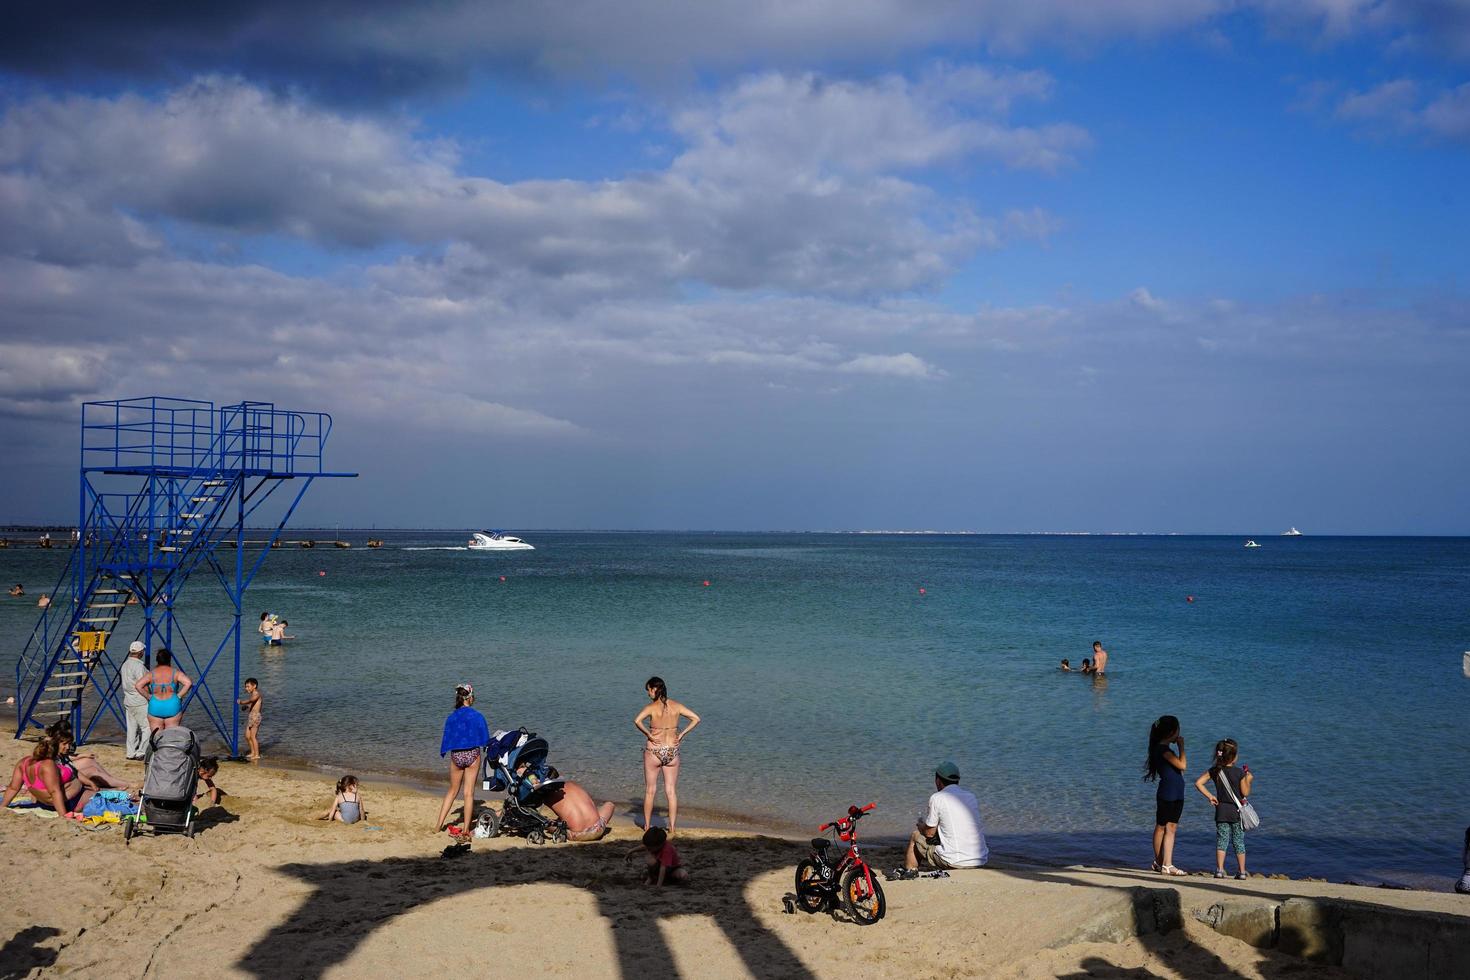 evpatoria, crimea-20 de junio de 2015 - paseo de la ciudad junto al mar con la playa y los veraneantes. foto